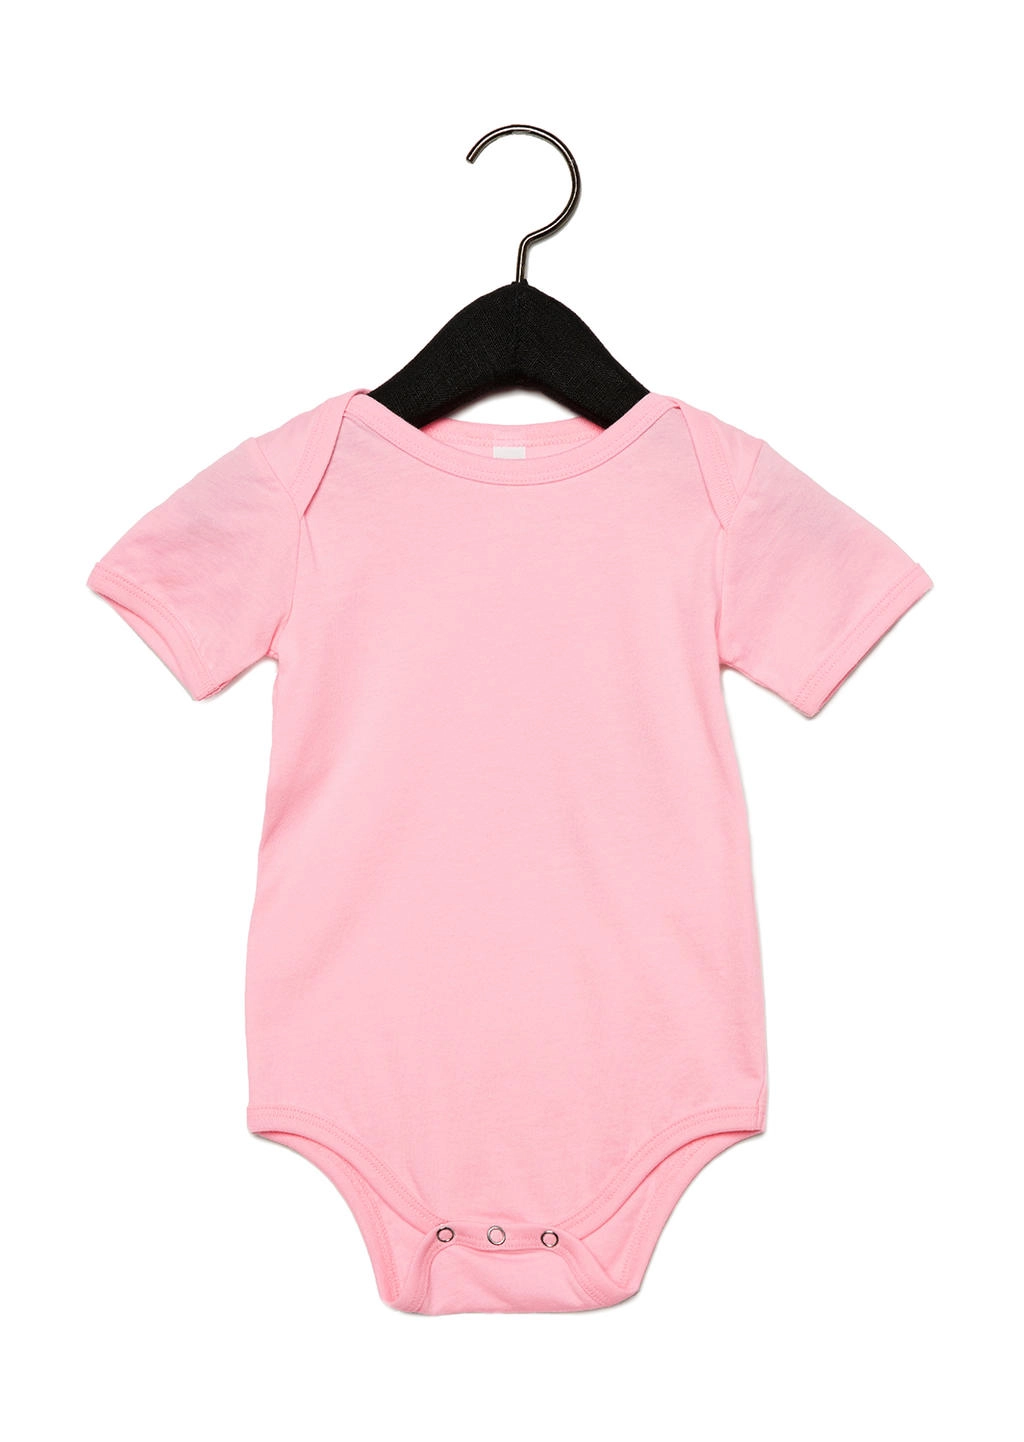 Baby Jersey Short Sleeve One Piece zum Besticken und Bedrucken in der Farbe Pink mit Ihren Logo, Schriftzug oder Motiv.